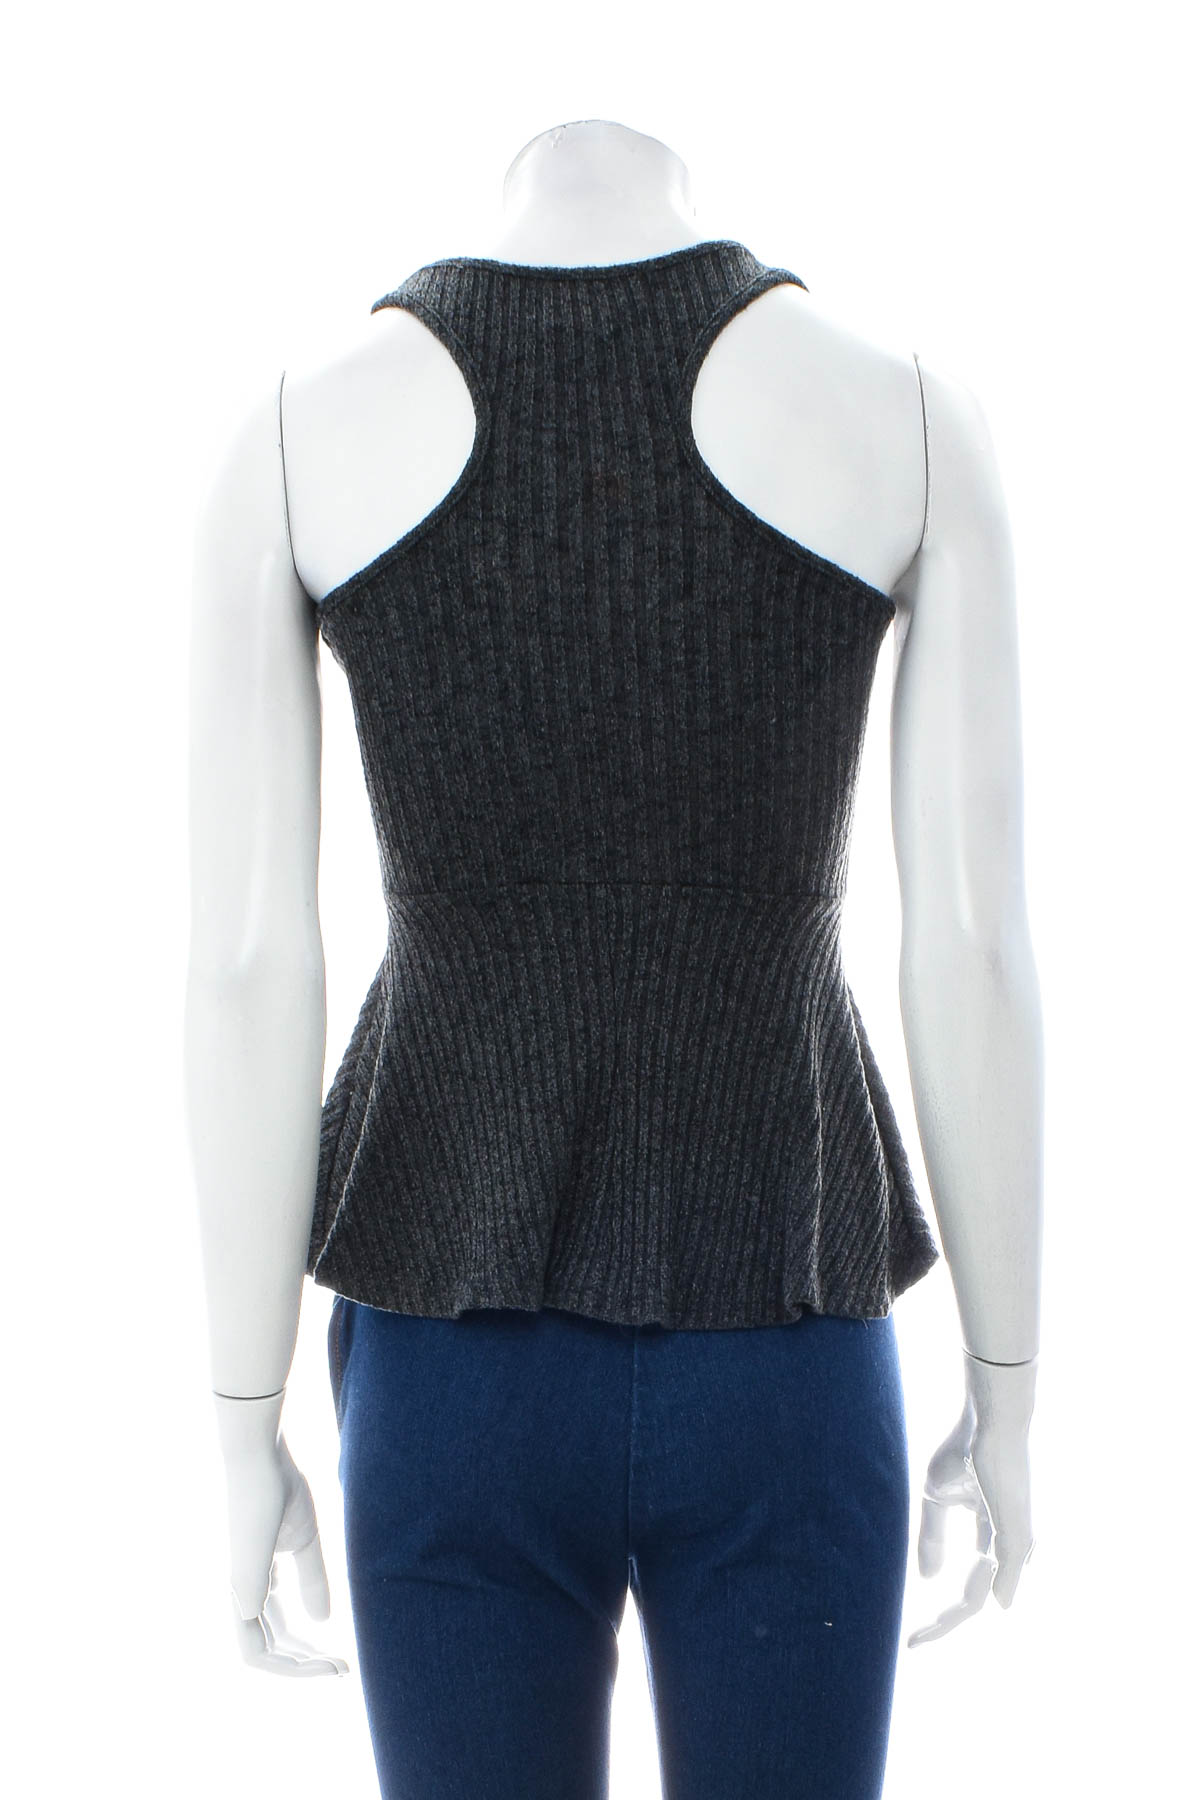 Women's sweater - Suzy Shier - 1